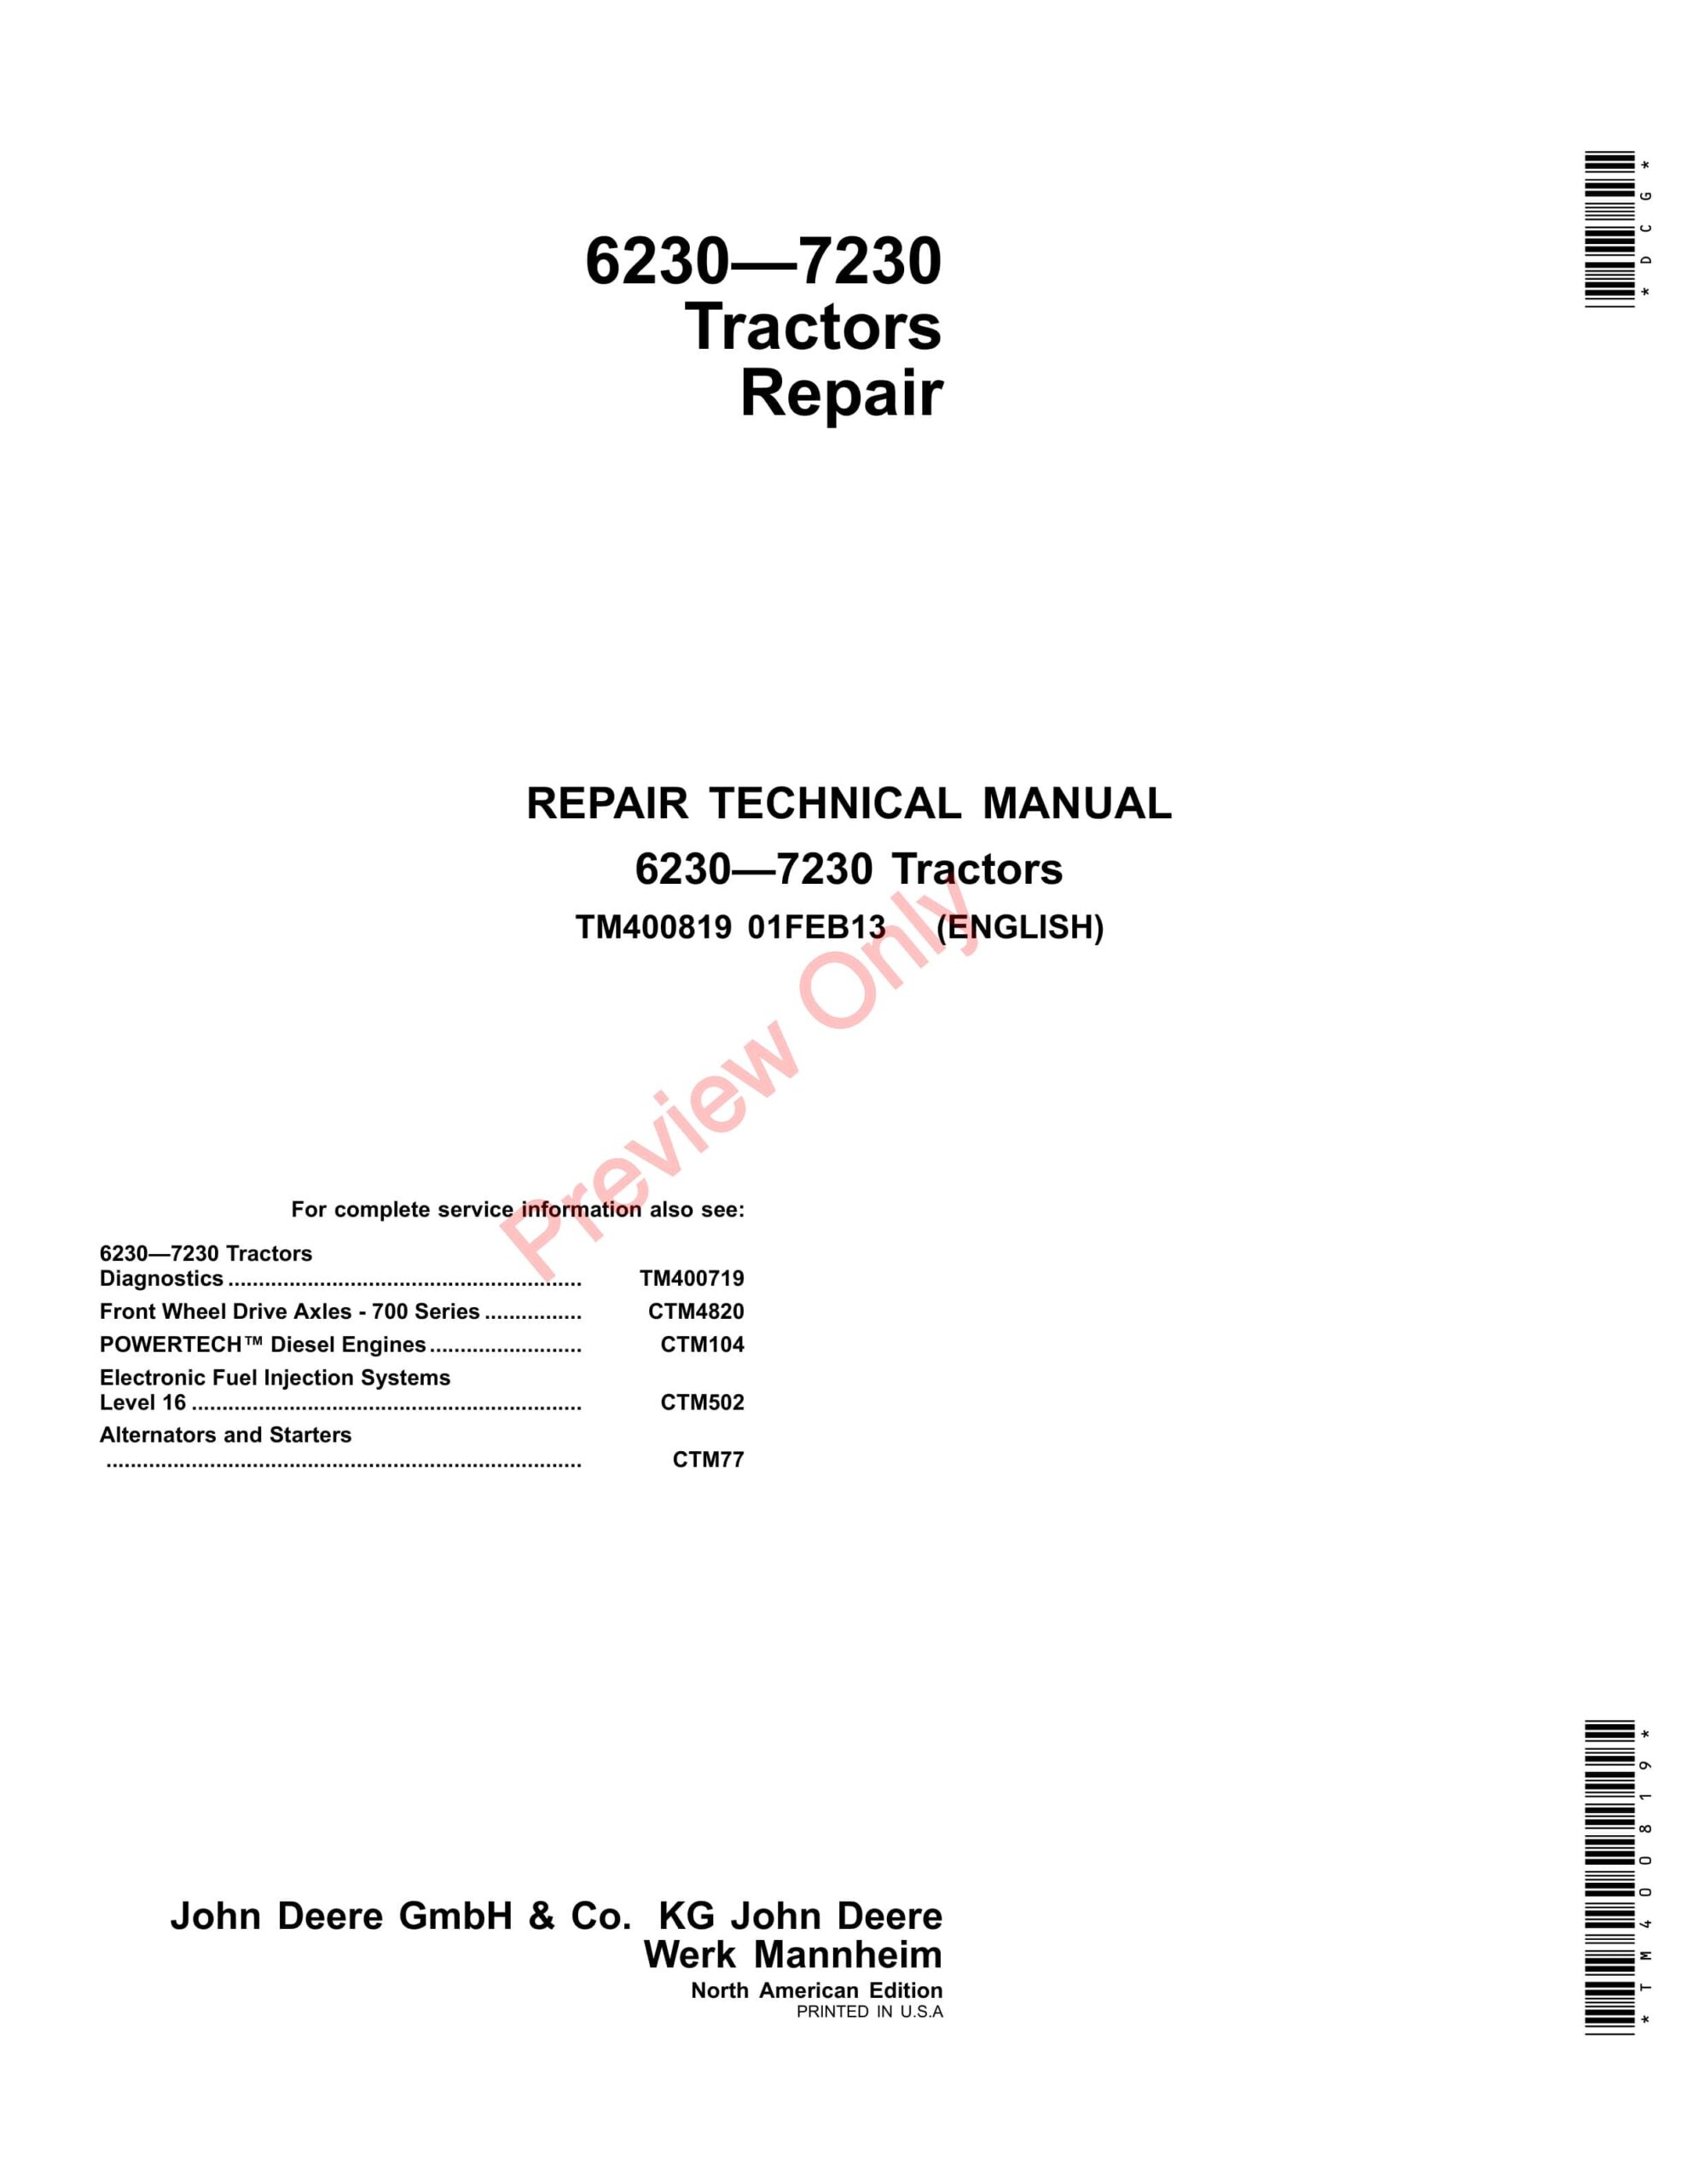 John Deere 6230, 6330, 6430, 7130 and 7230 Tractors Repair Technical Manual TM400819 01FEB13-1